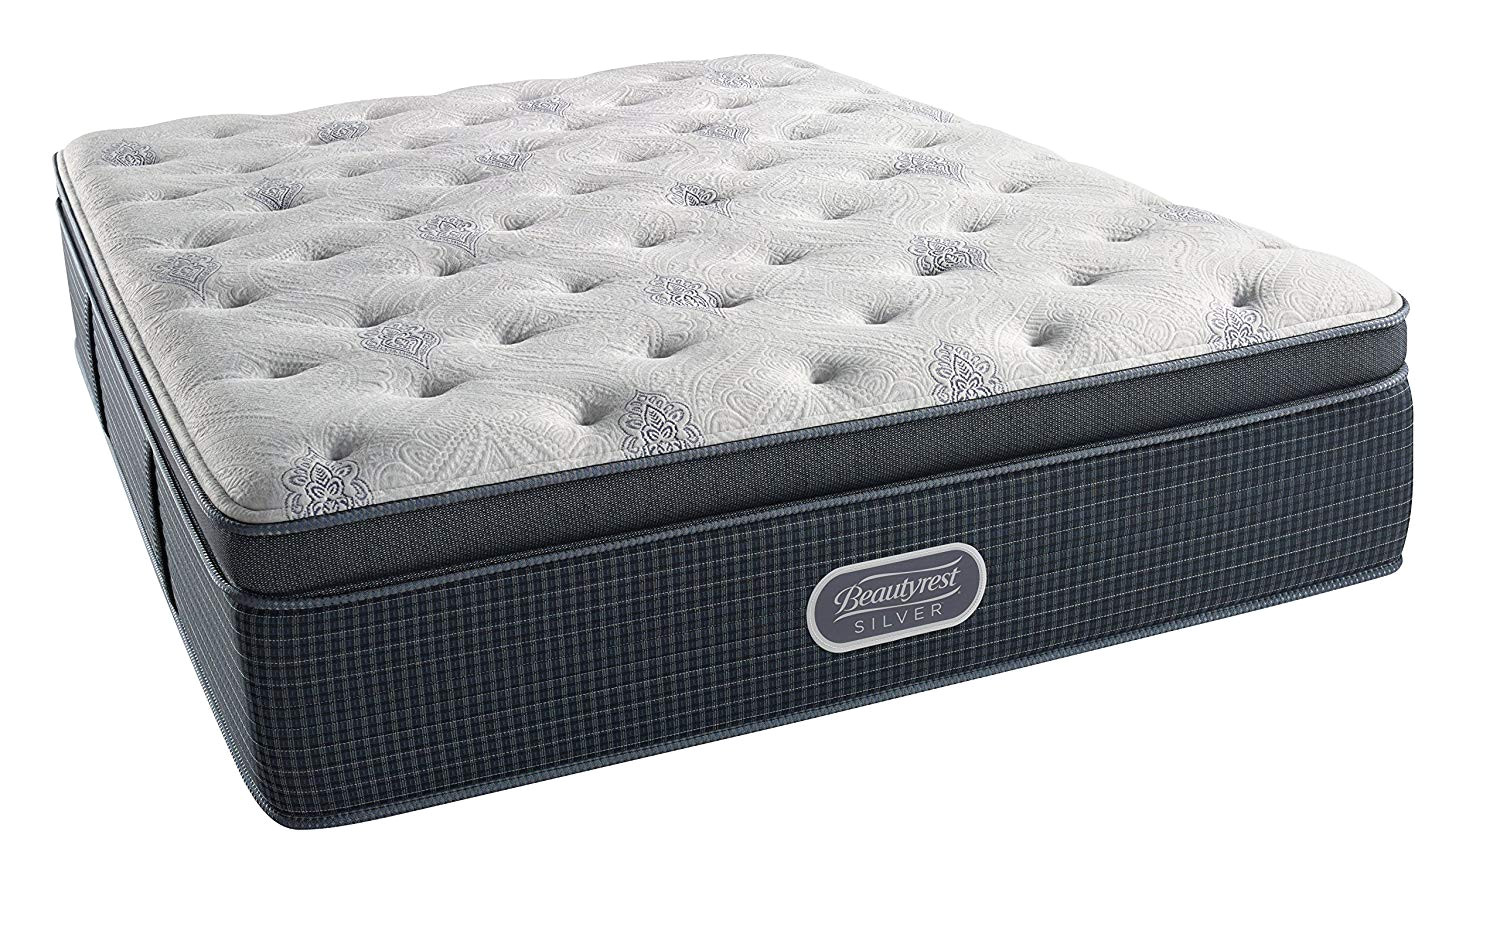 cushion firm or plush mattress